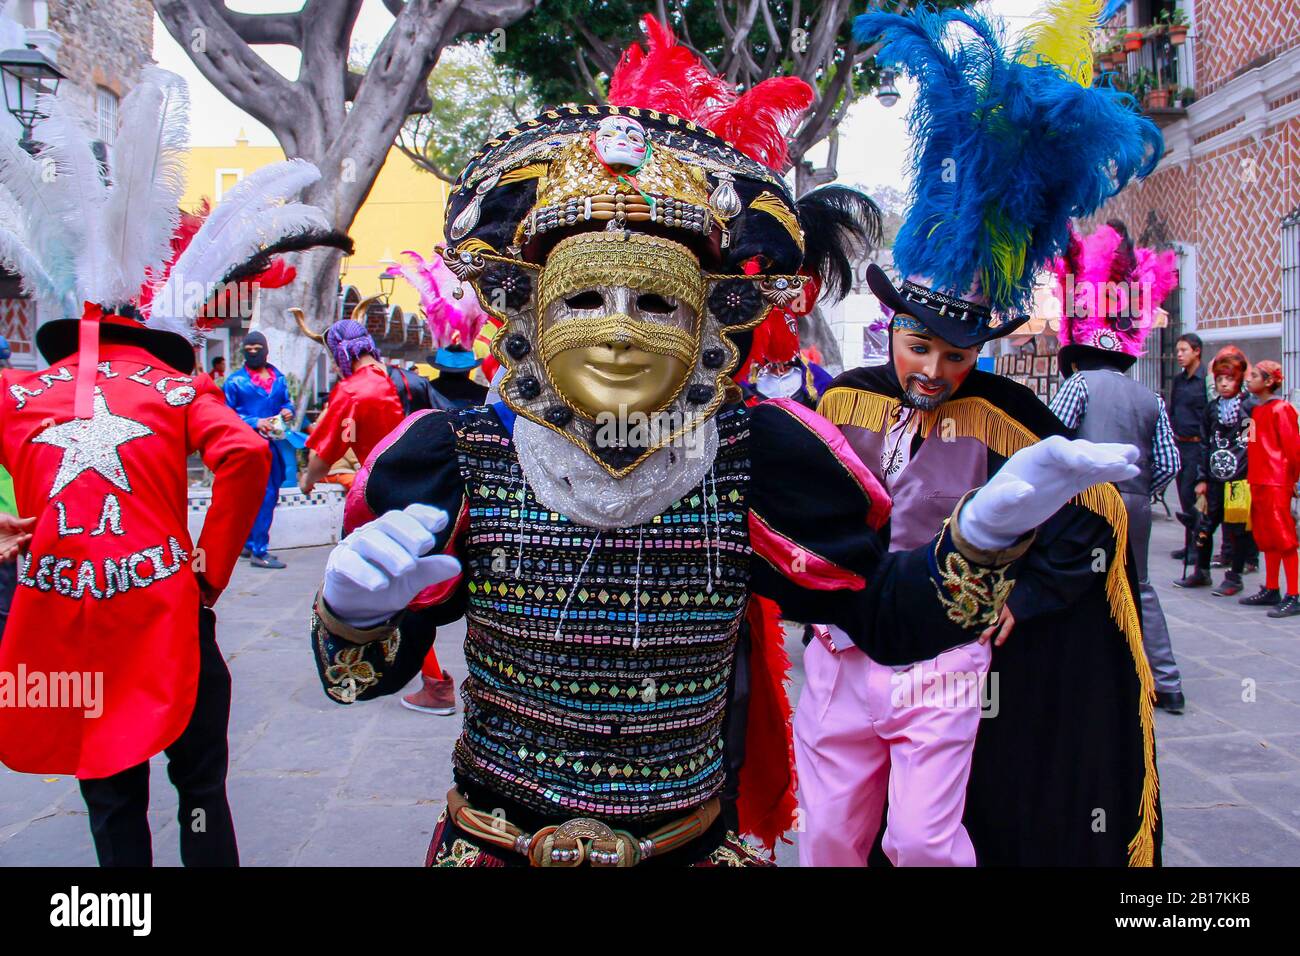 Huehues Mexique, danseuse portant un costume traditionnel mexicain folklorique et masque riche en couleurs. Scène de Carnaval. Carnaval Mexicain Banque D'Images